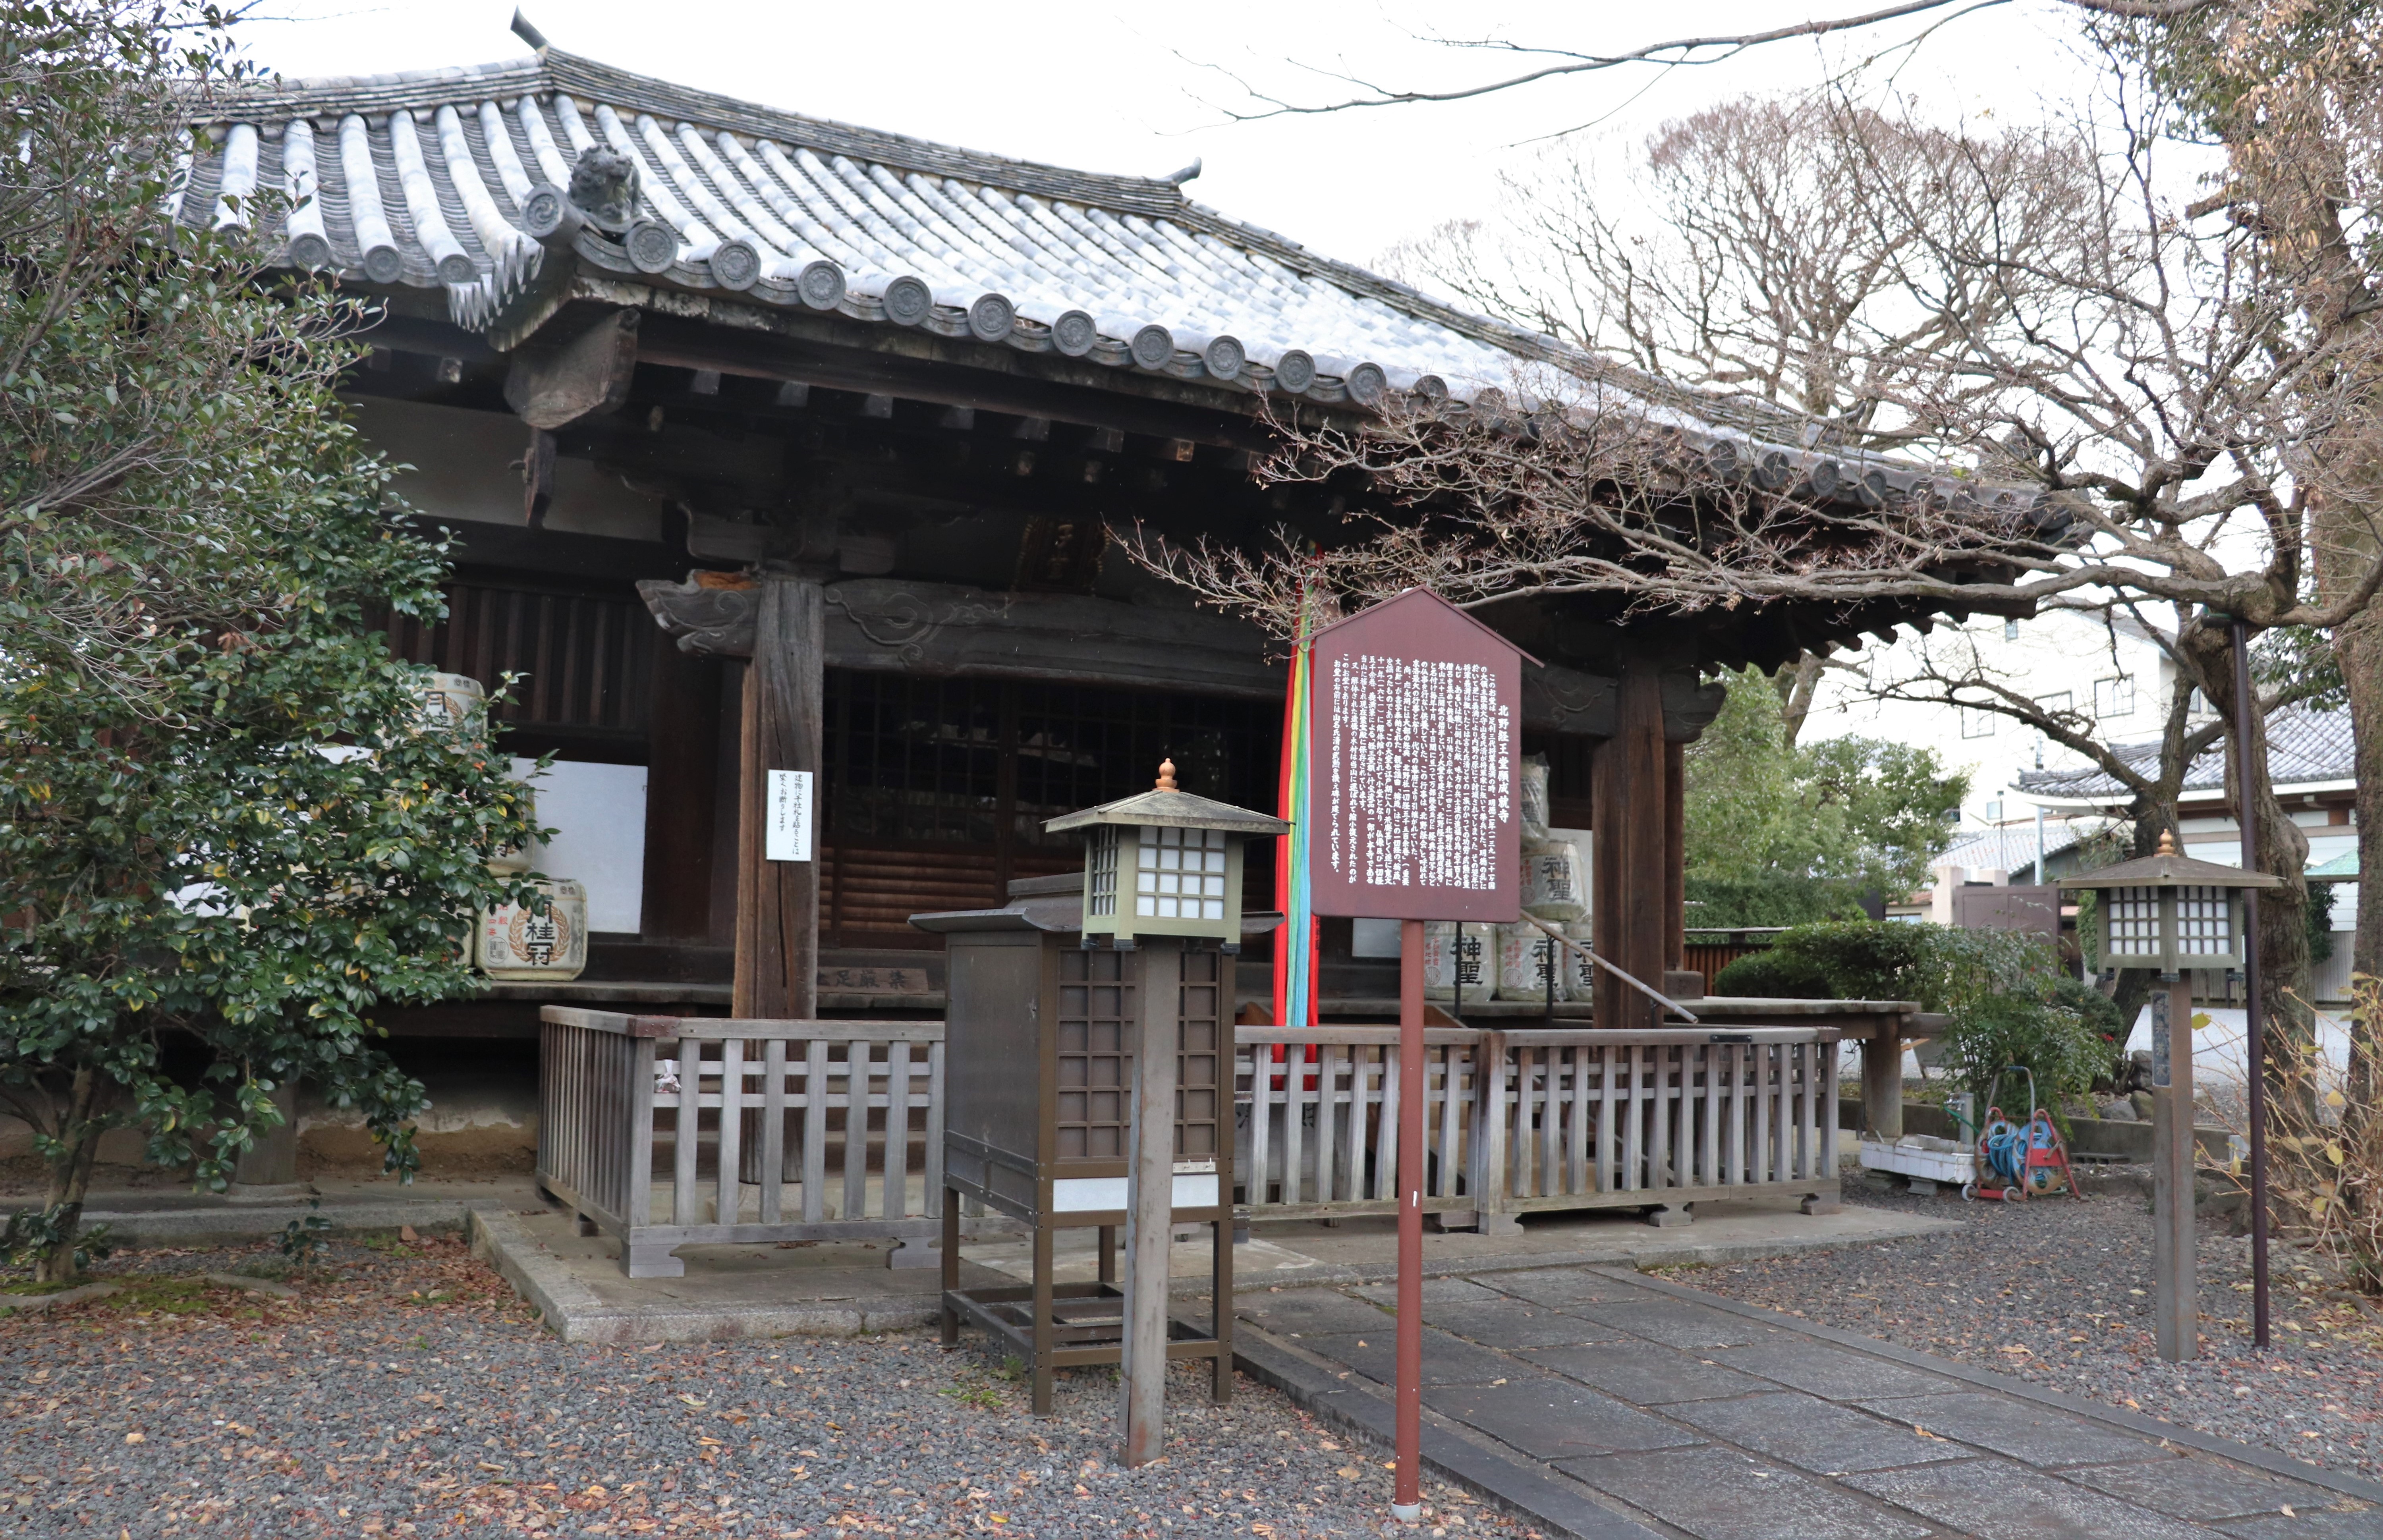 Kyoo-do Ganjyojyu-ji of Senbon Shakado Daihoon0ji temple Kyoto Japan